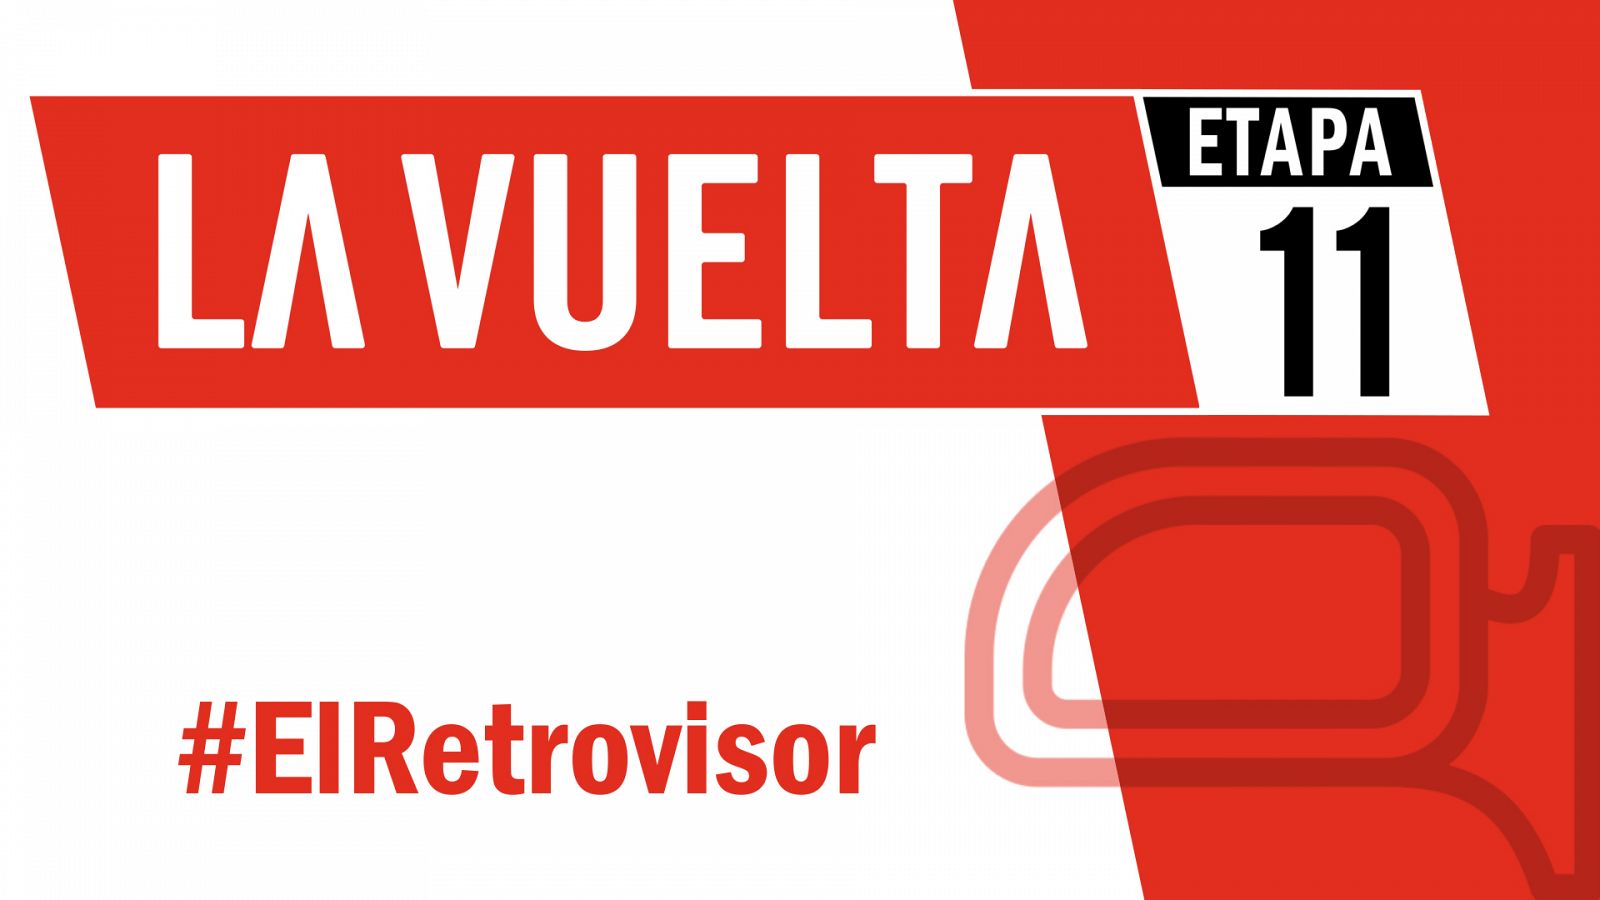 Vuelta a España 2019 | #ElRetrovisor - Etapa 11